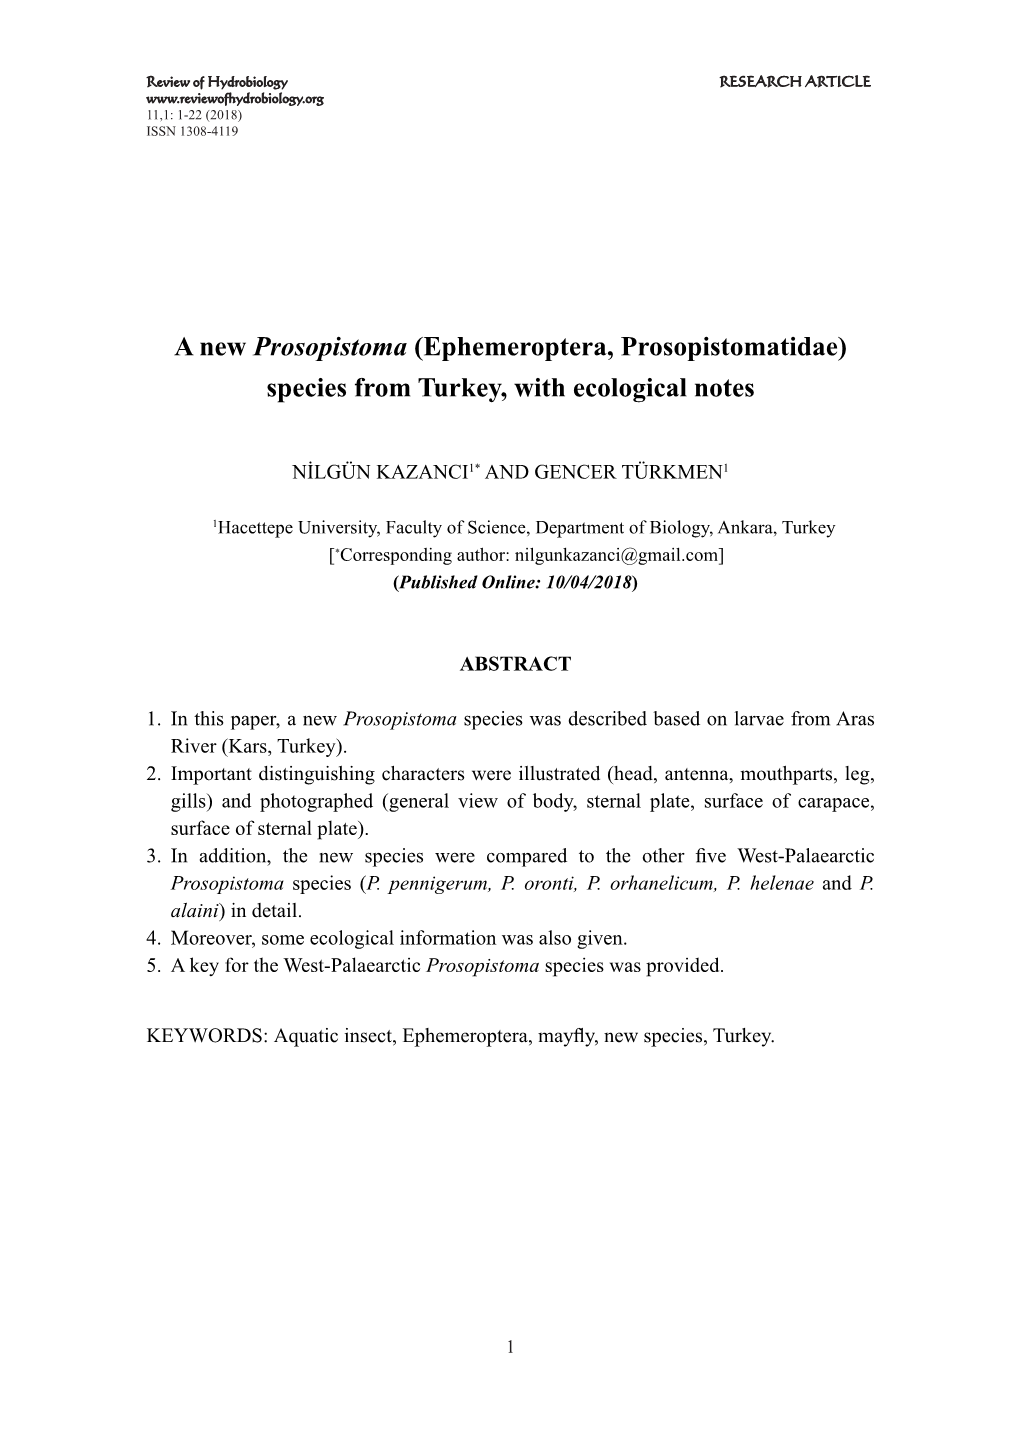 Ephemeroptera, Prosopistomatidae) Species from Turkey, with Ecological Notes